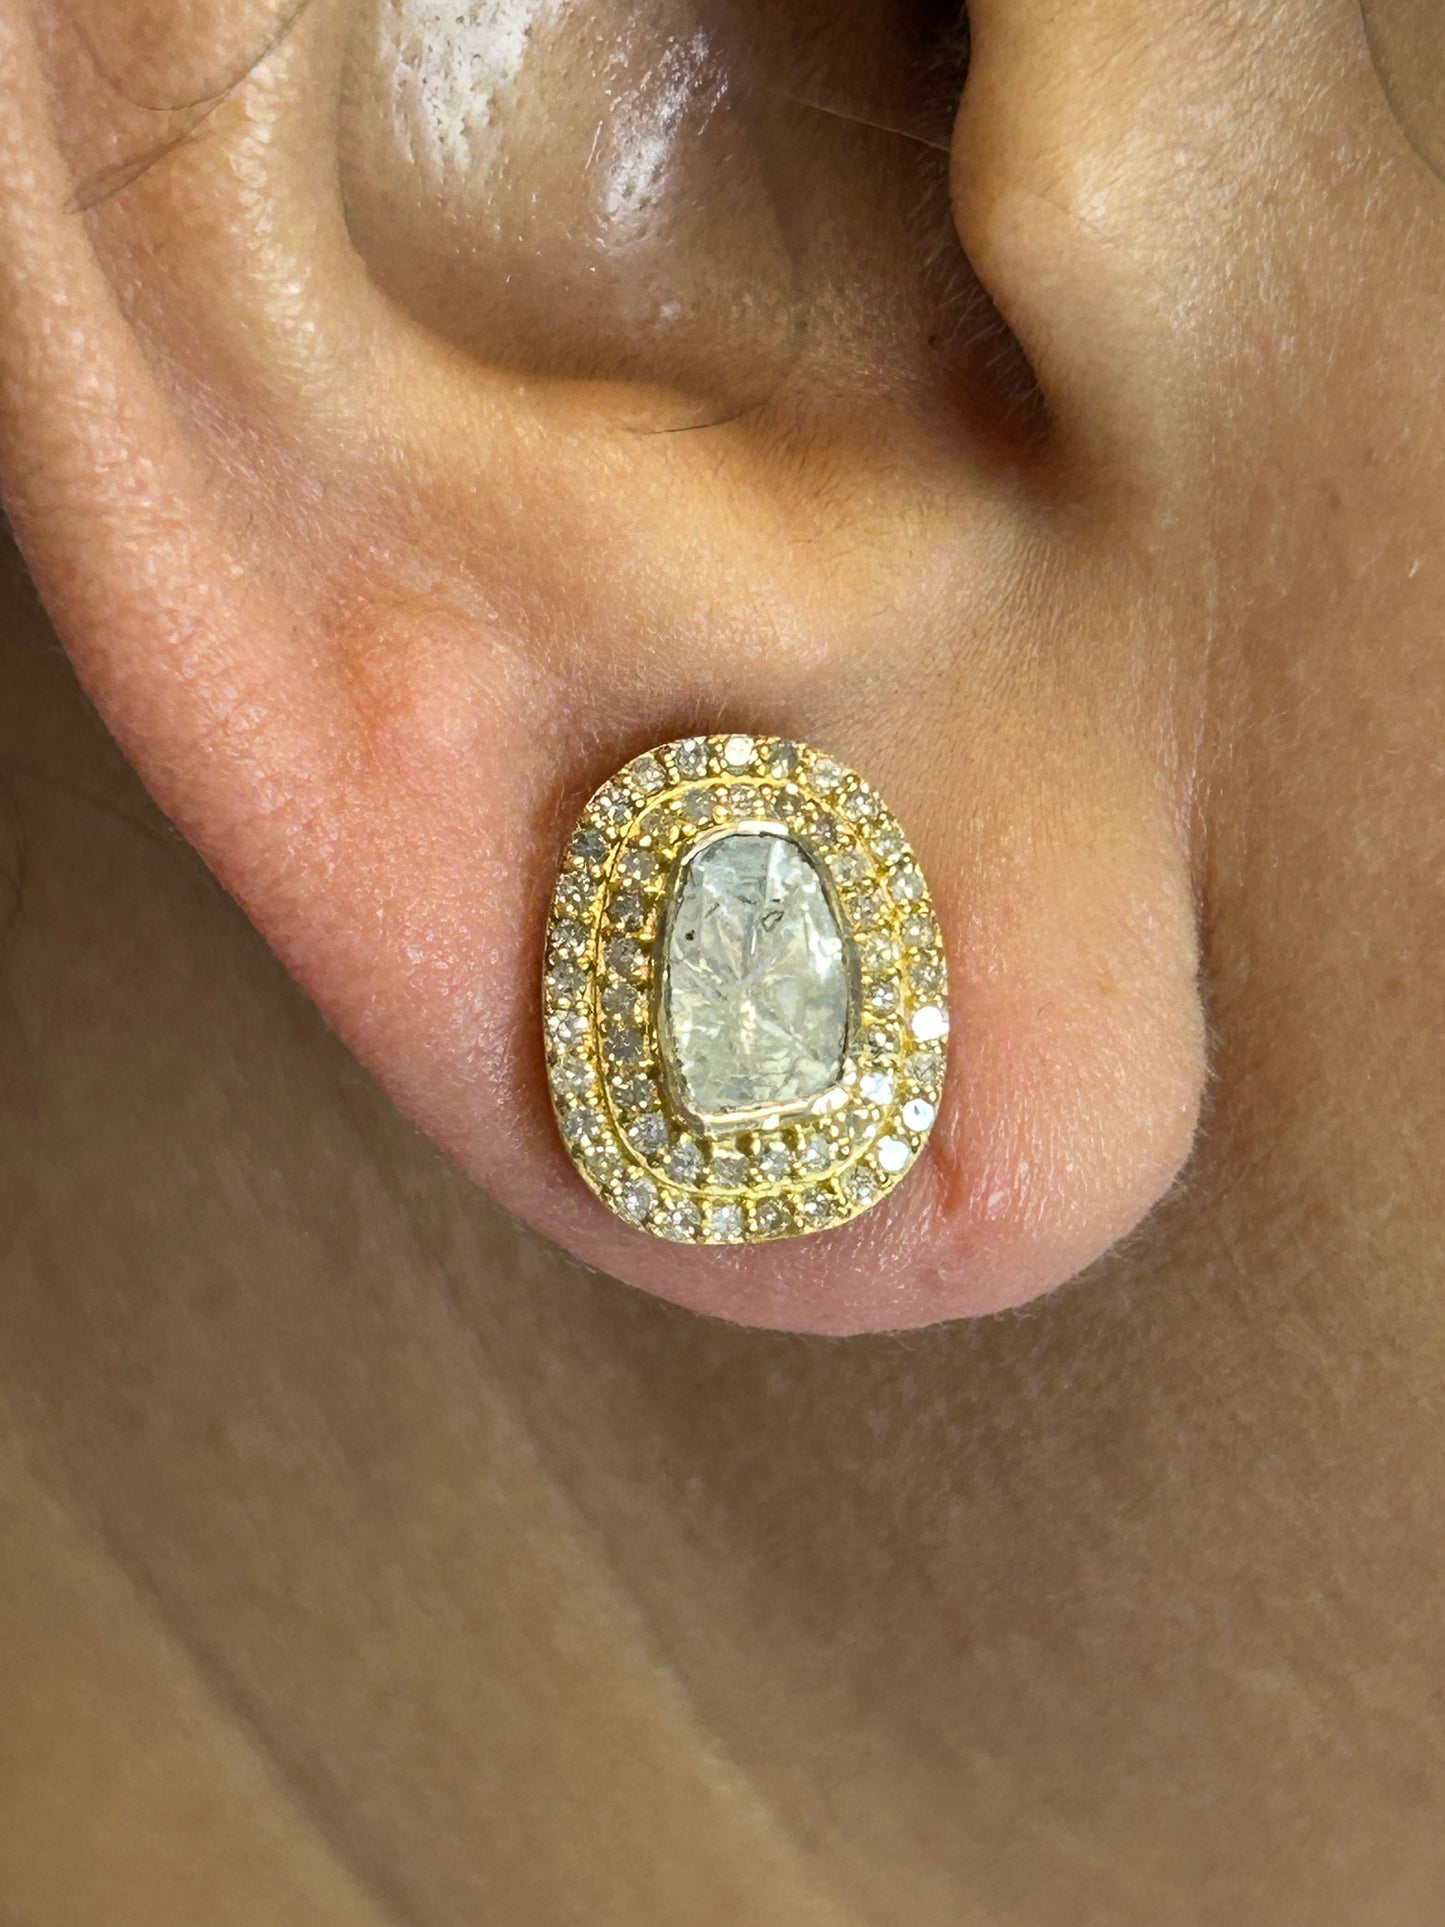 Oval 14k Solid Gold Diamond Stud Earring. Genuine handmade pave diamond Earring. 14k Solid Gold Diamond Earring..